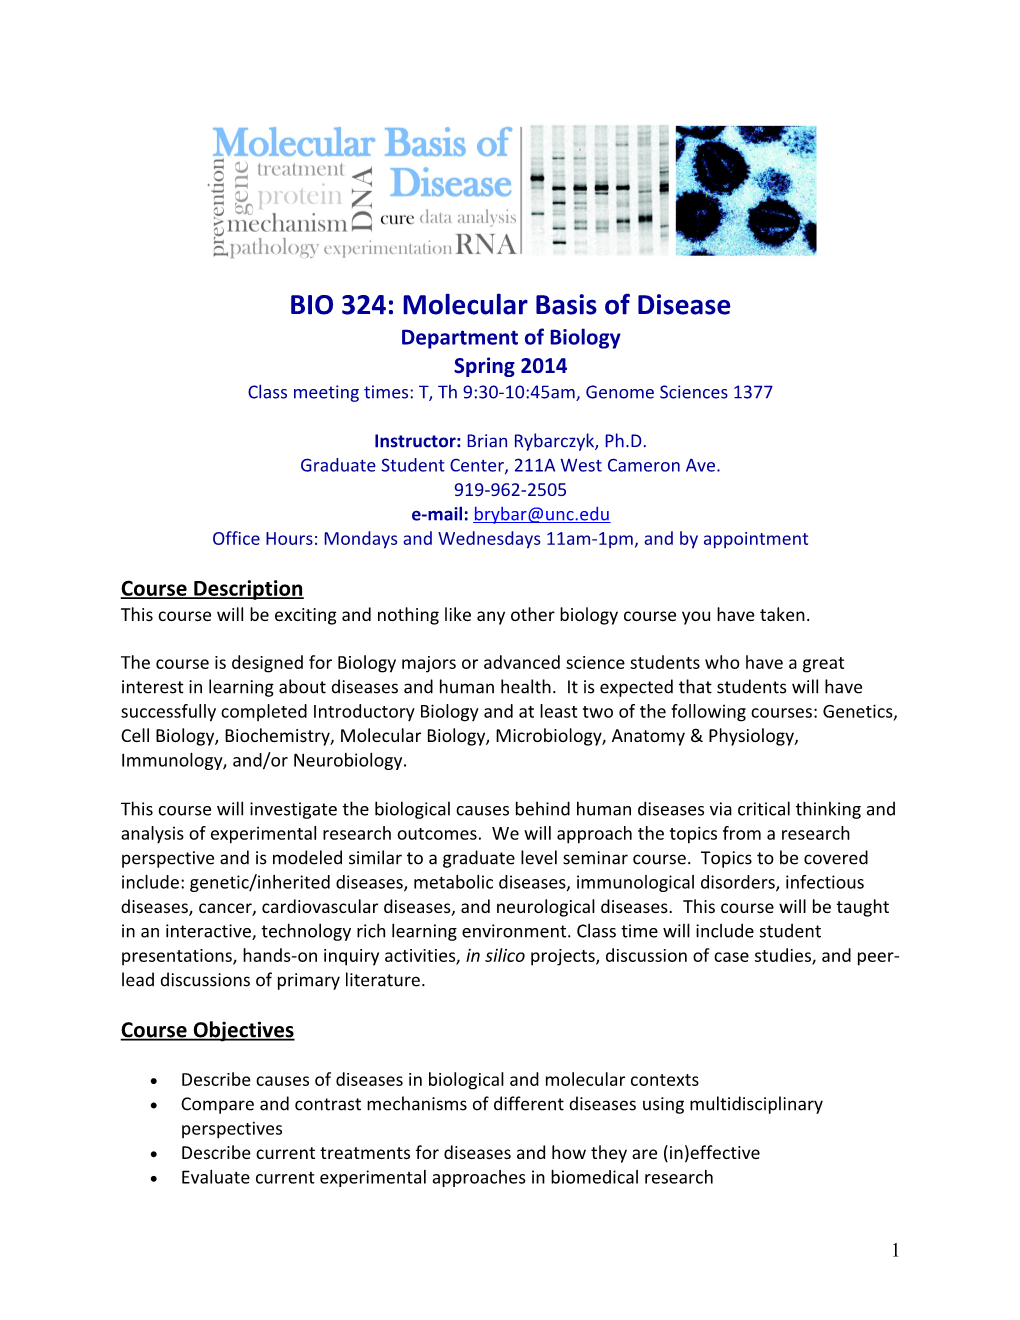 BIO 324: Molecular Basis of Disease Department of Biology